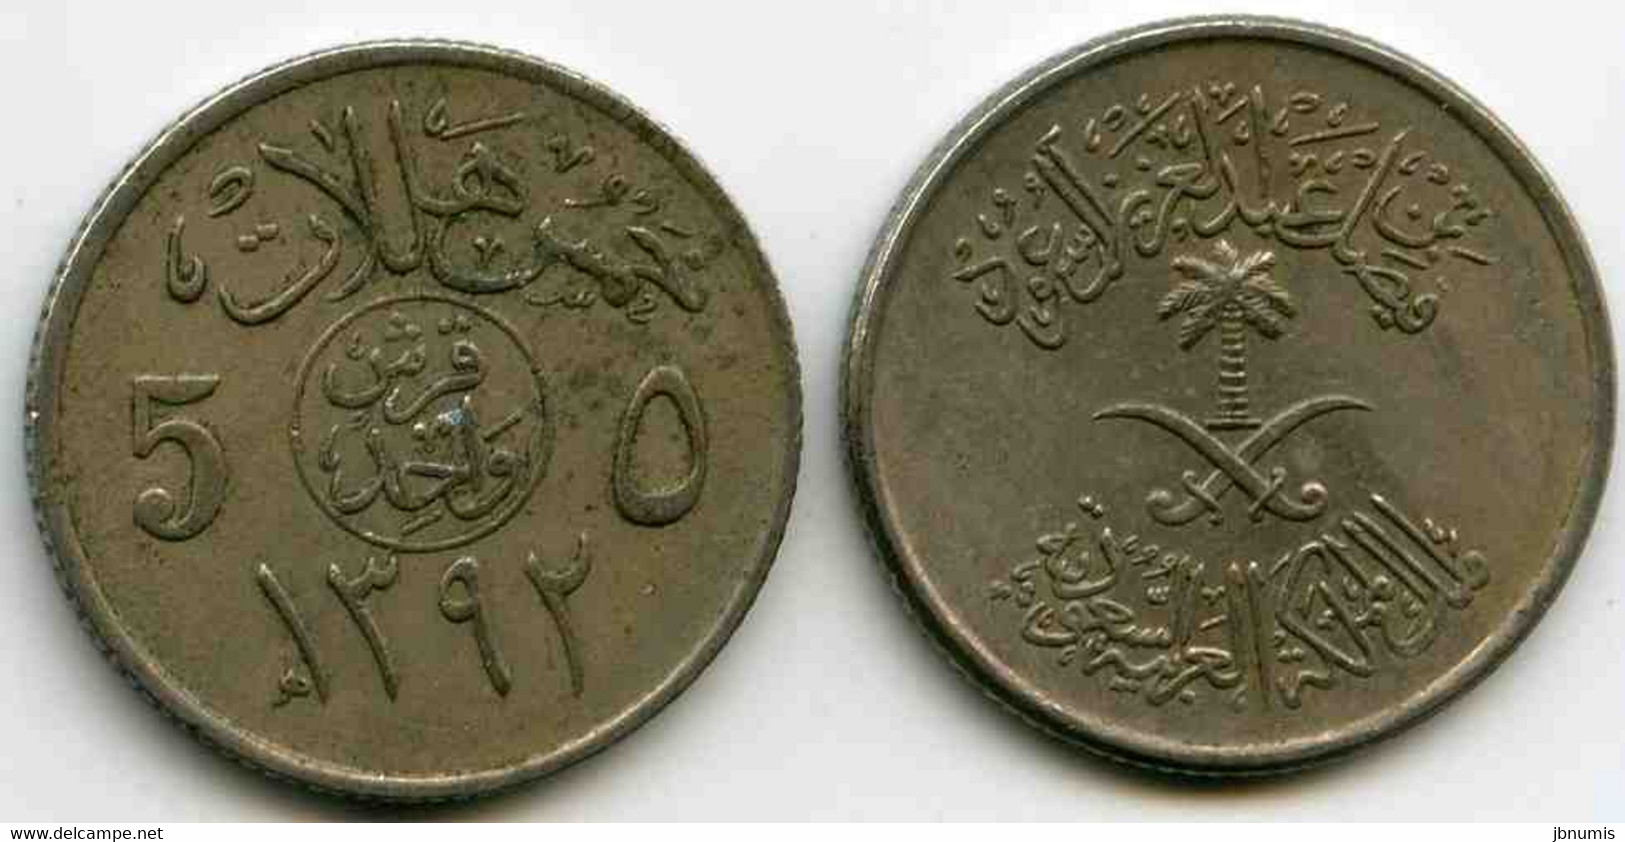 Arabie Saoudite Saudi Arabia 5 Halala 1392 1972 KM 45 - Saudi Arabia